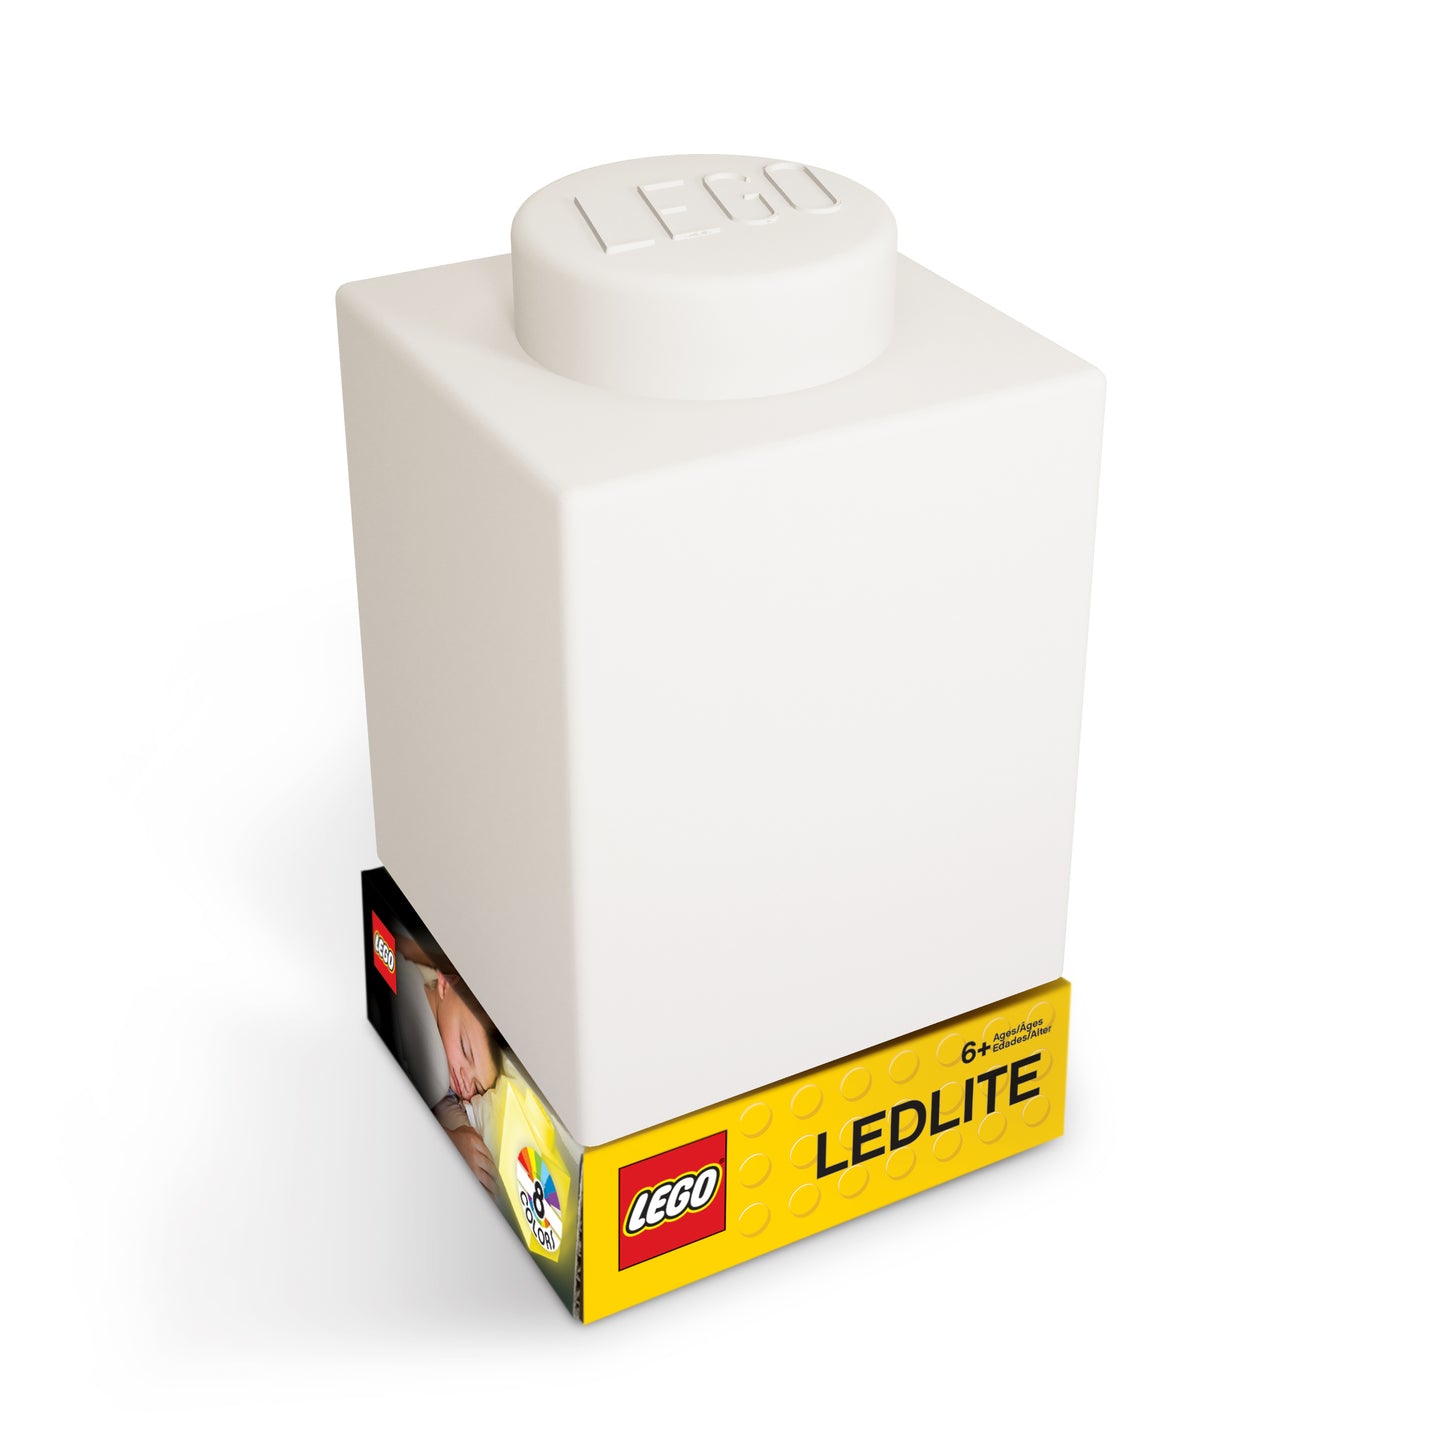 IQ レゴ アイコニック 1×1のレゴブロック形 柔らかシリコン タッチ式 ランプ 白 (LP40)